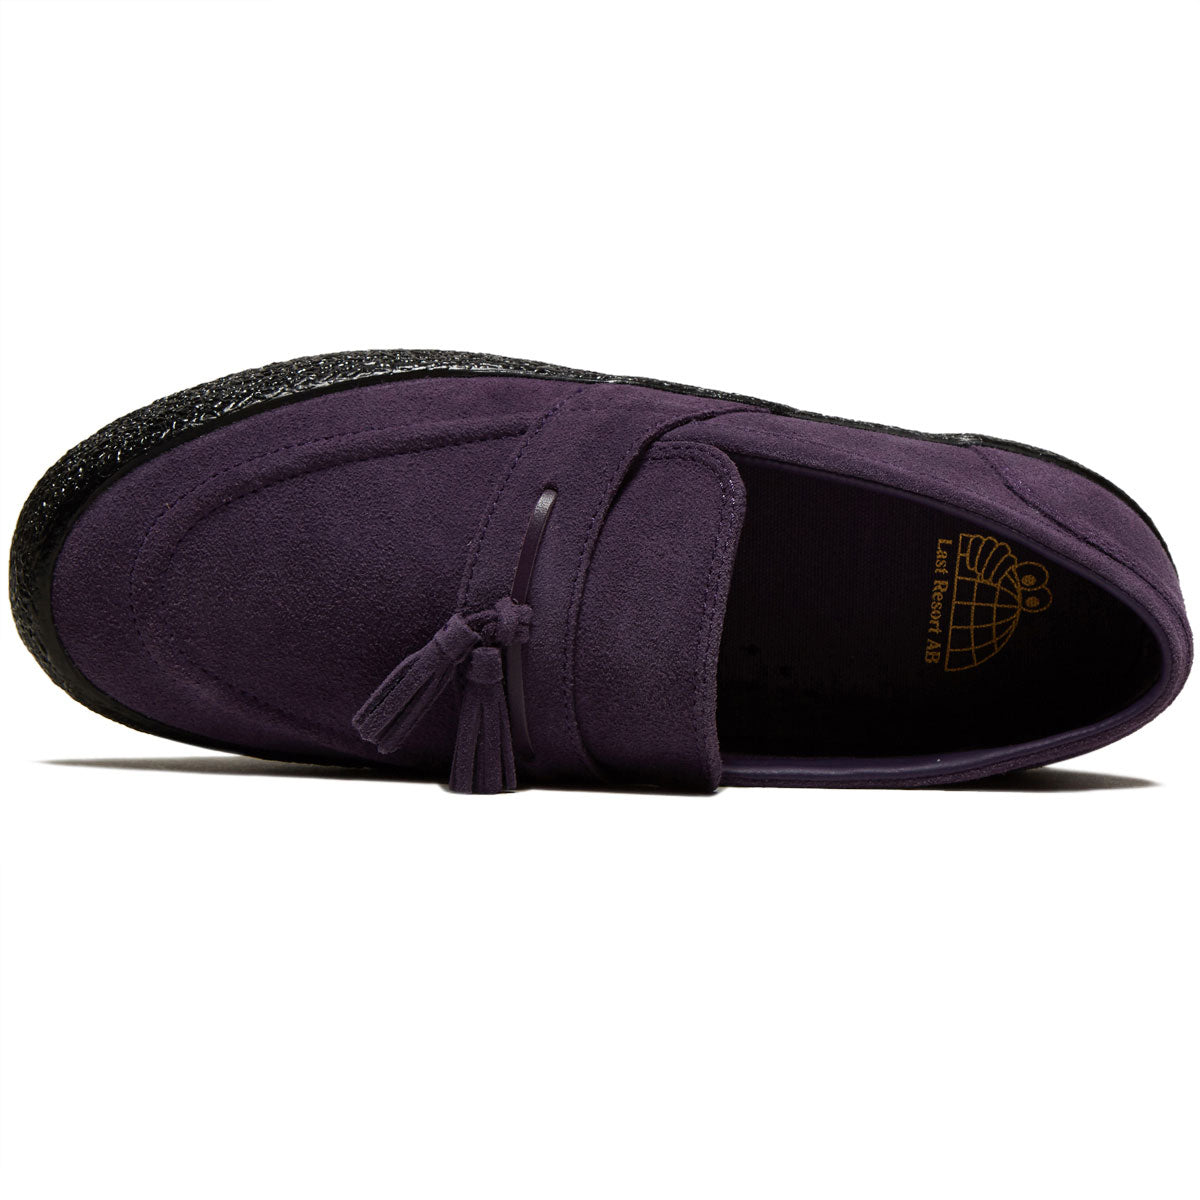 Last Resort AB VM005 Loafer Shoes - Loganberry/Black image 3